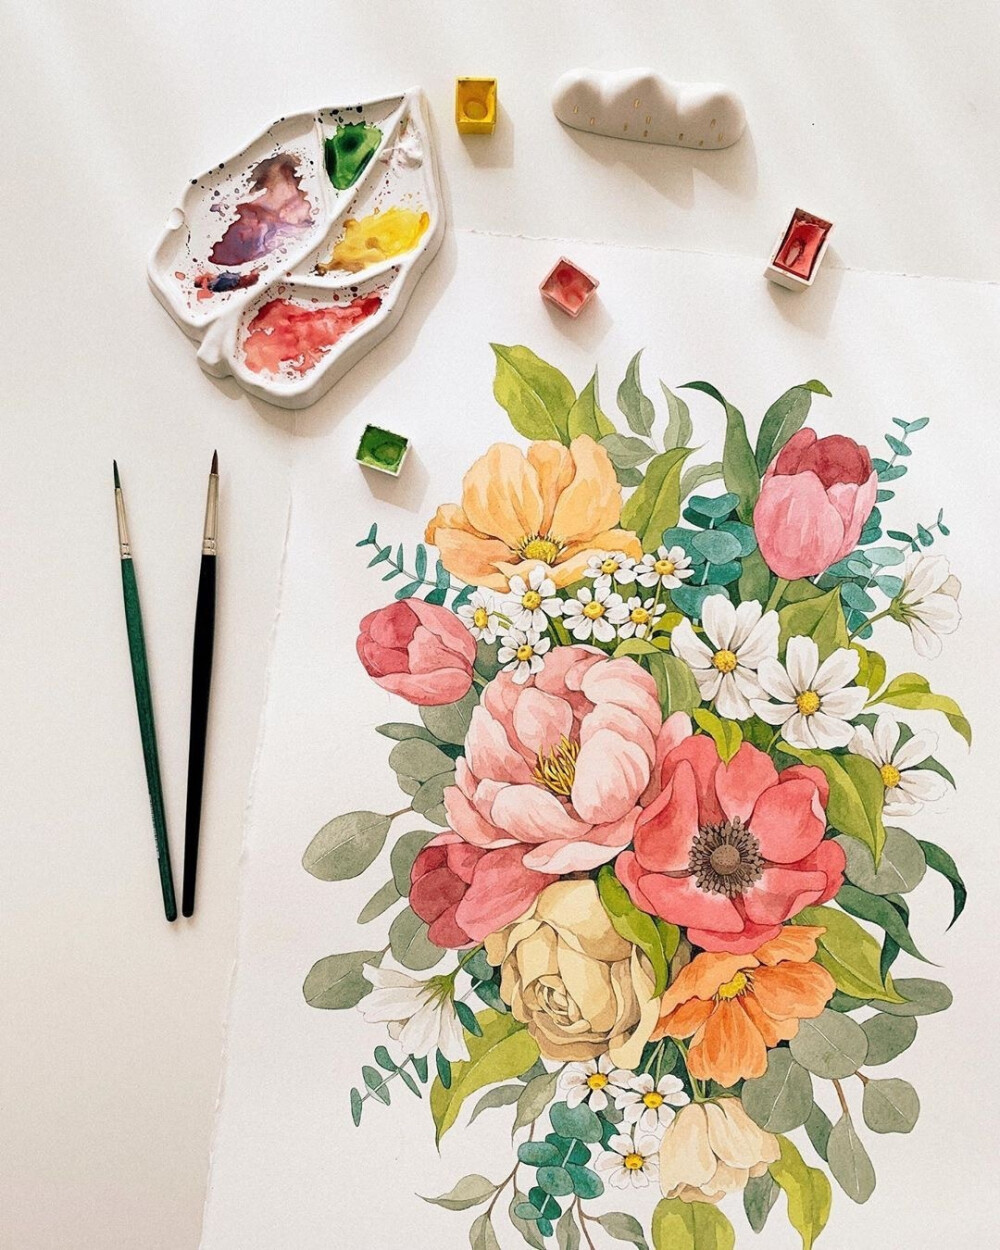 清新的色彩水彩花卉 堆糖,美图壁纸兴趣社区